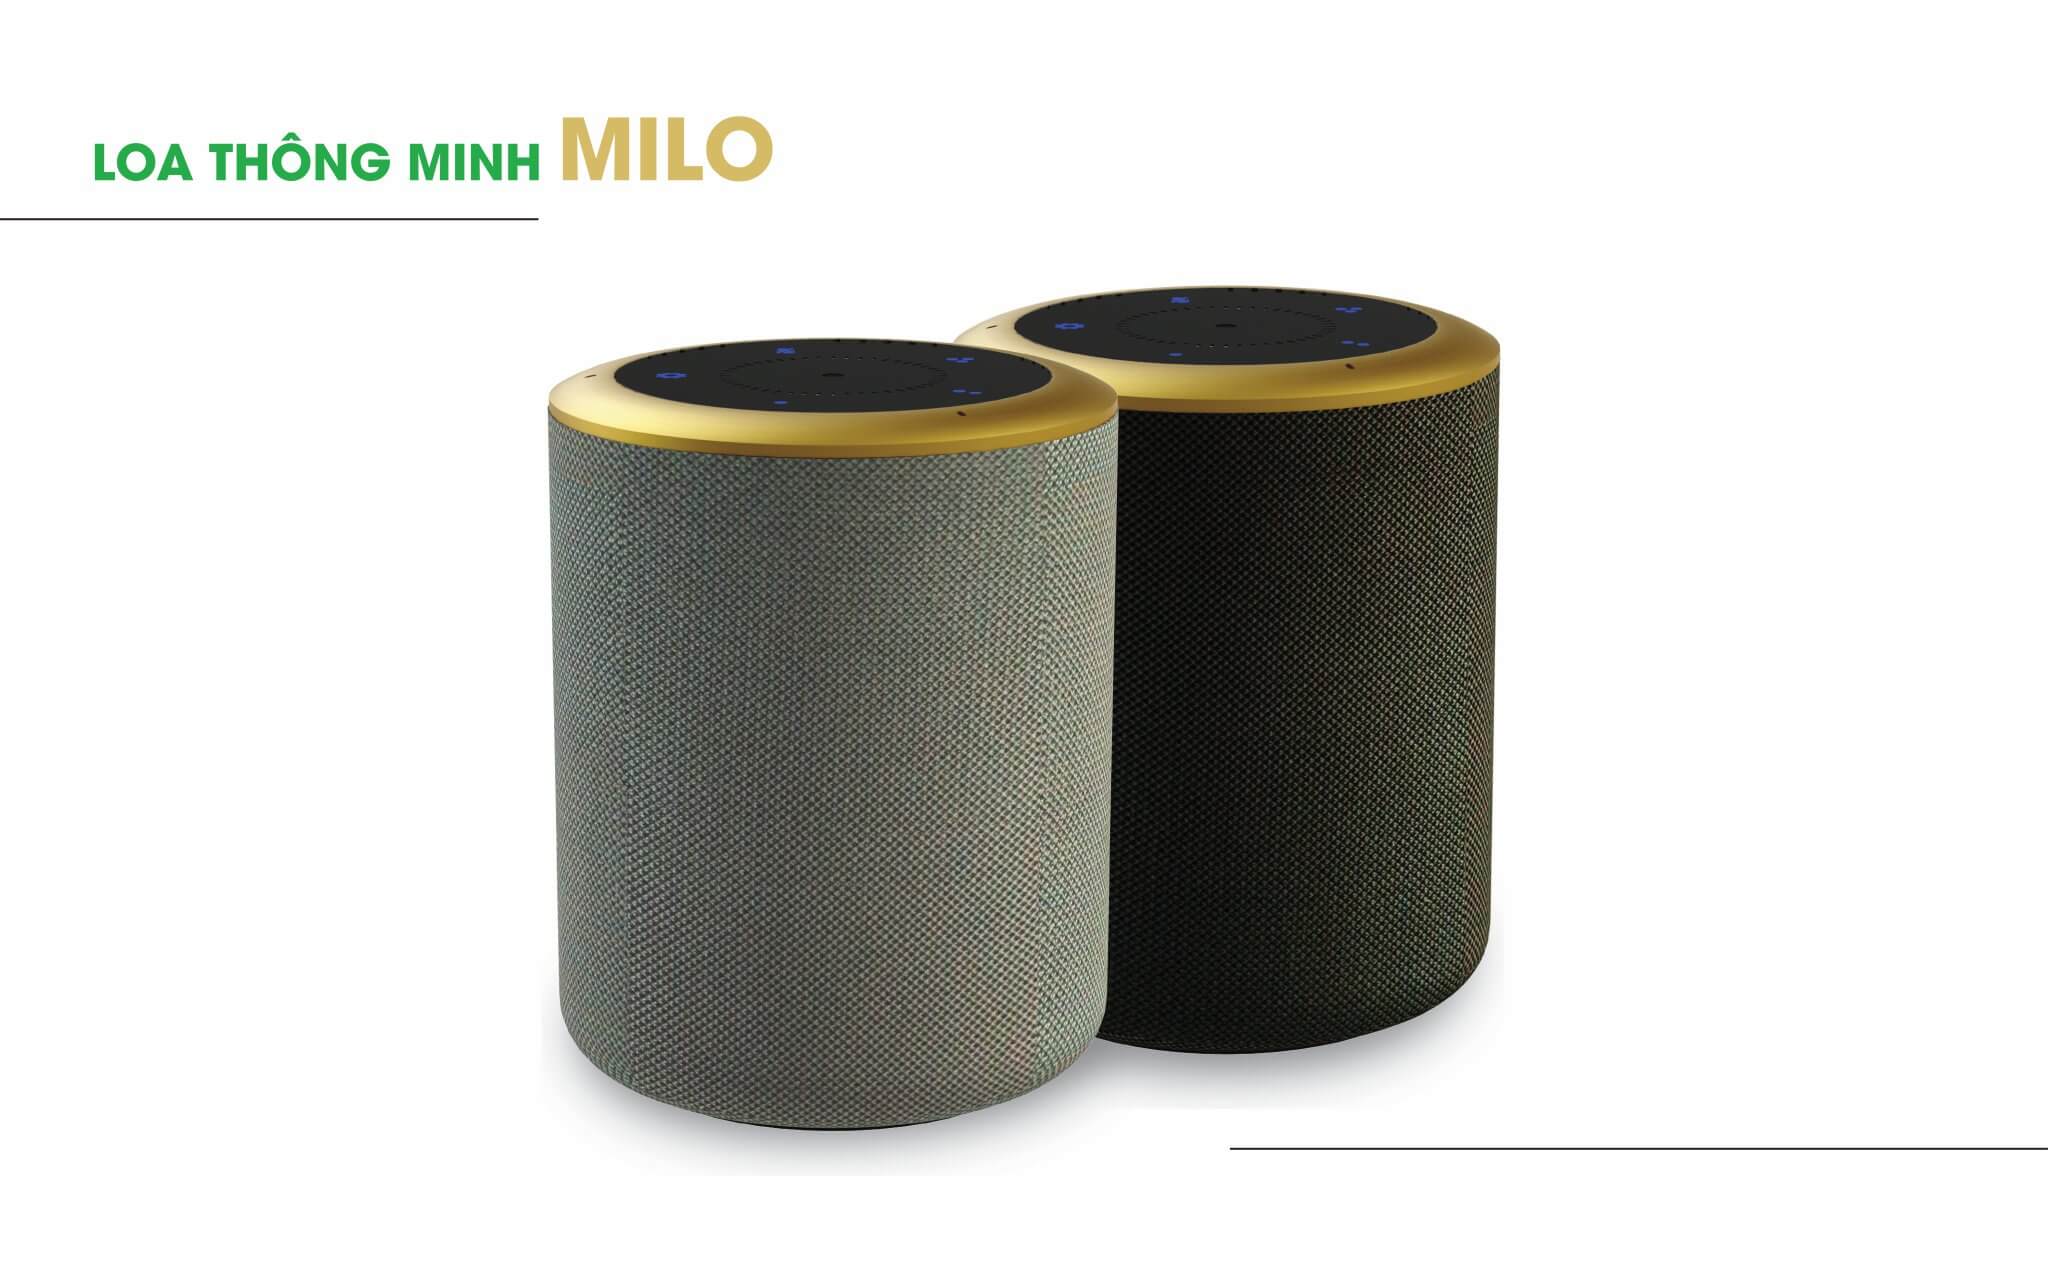 Lumi Milo, thương hiệu Việt, phá vỡ rào cản ngôn ngữ tích hợp ngôn ngữ 3 vùng miền việt nam (Bắc ,Trung, Nam)